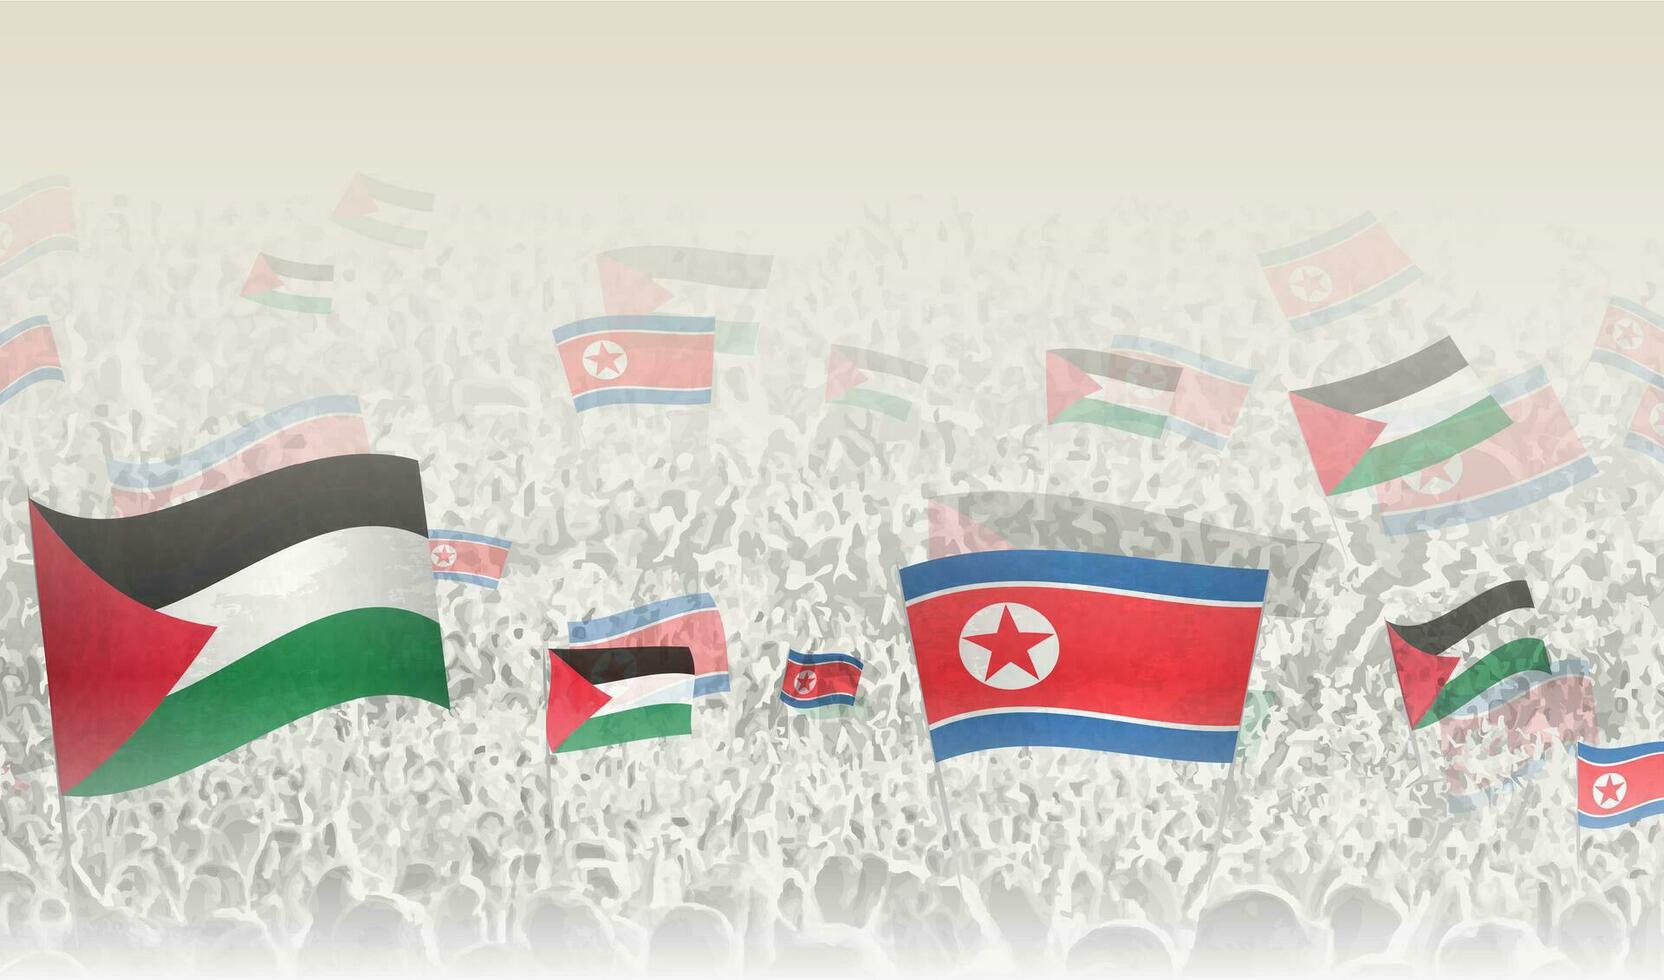 Palestina y norte Corea banderas en un multitud de aplausos gente. vector